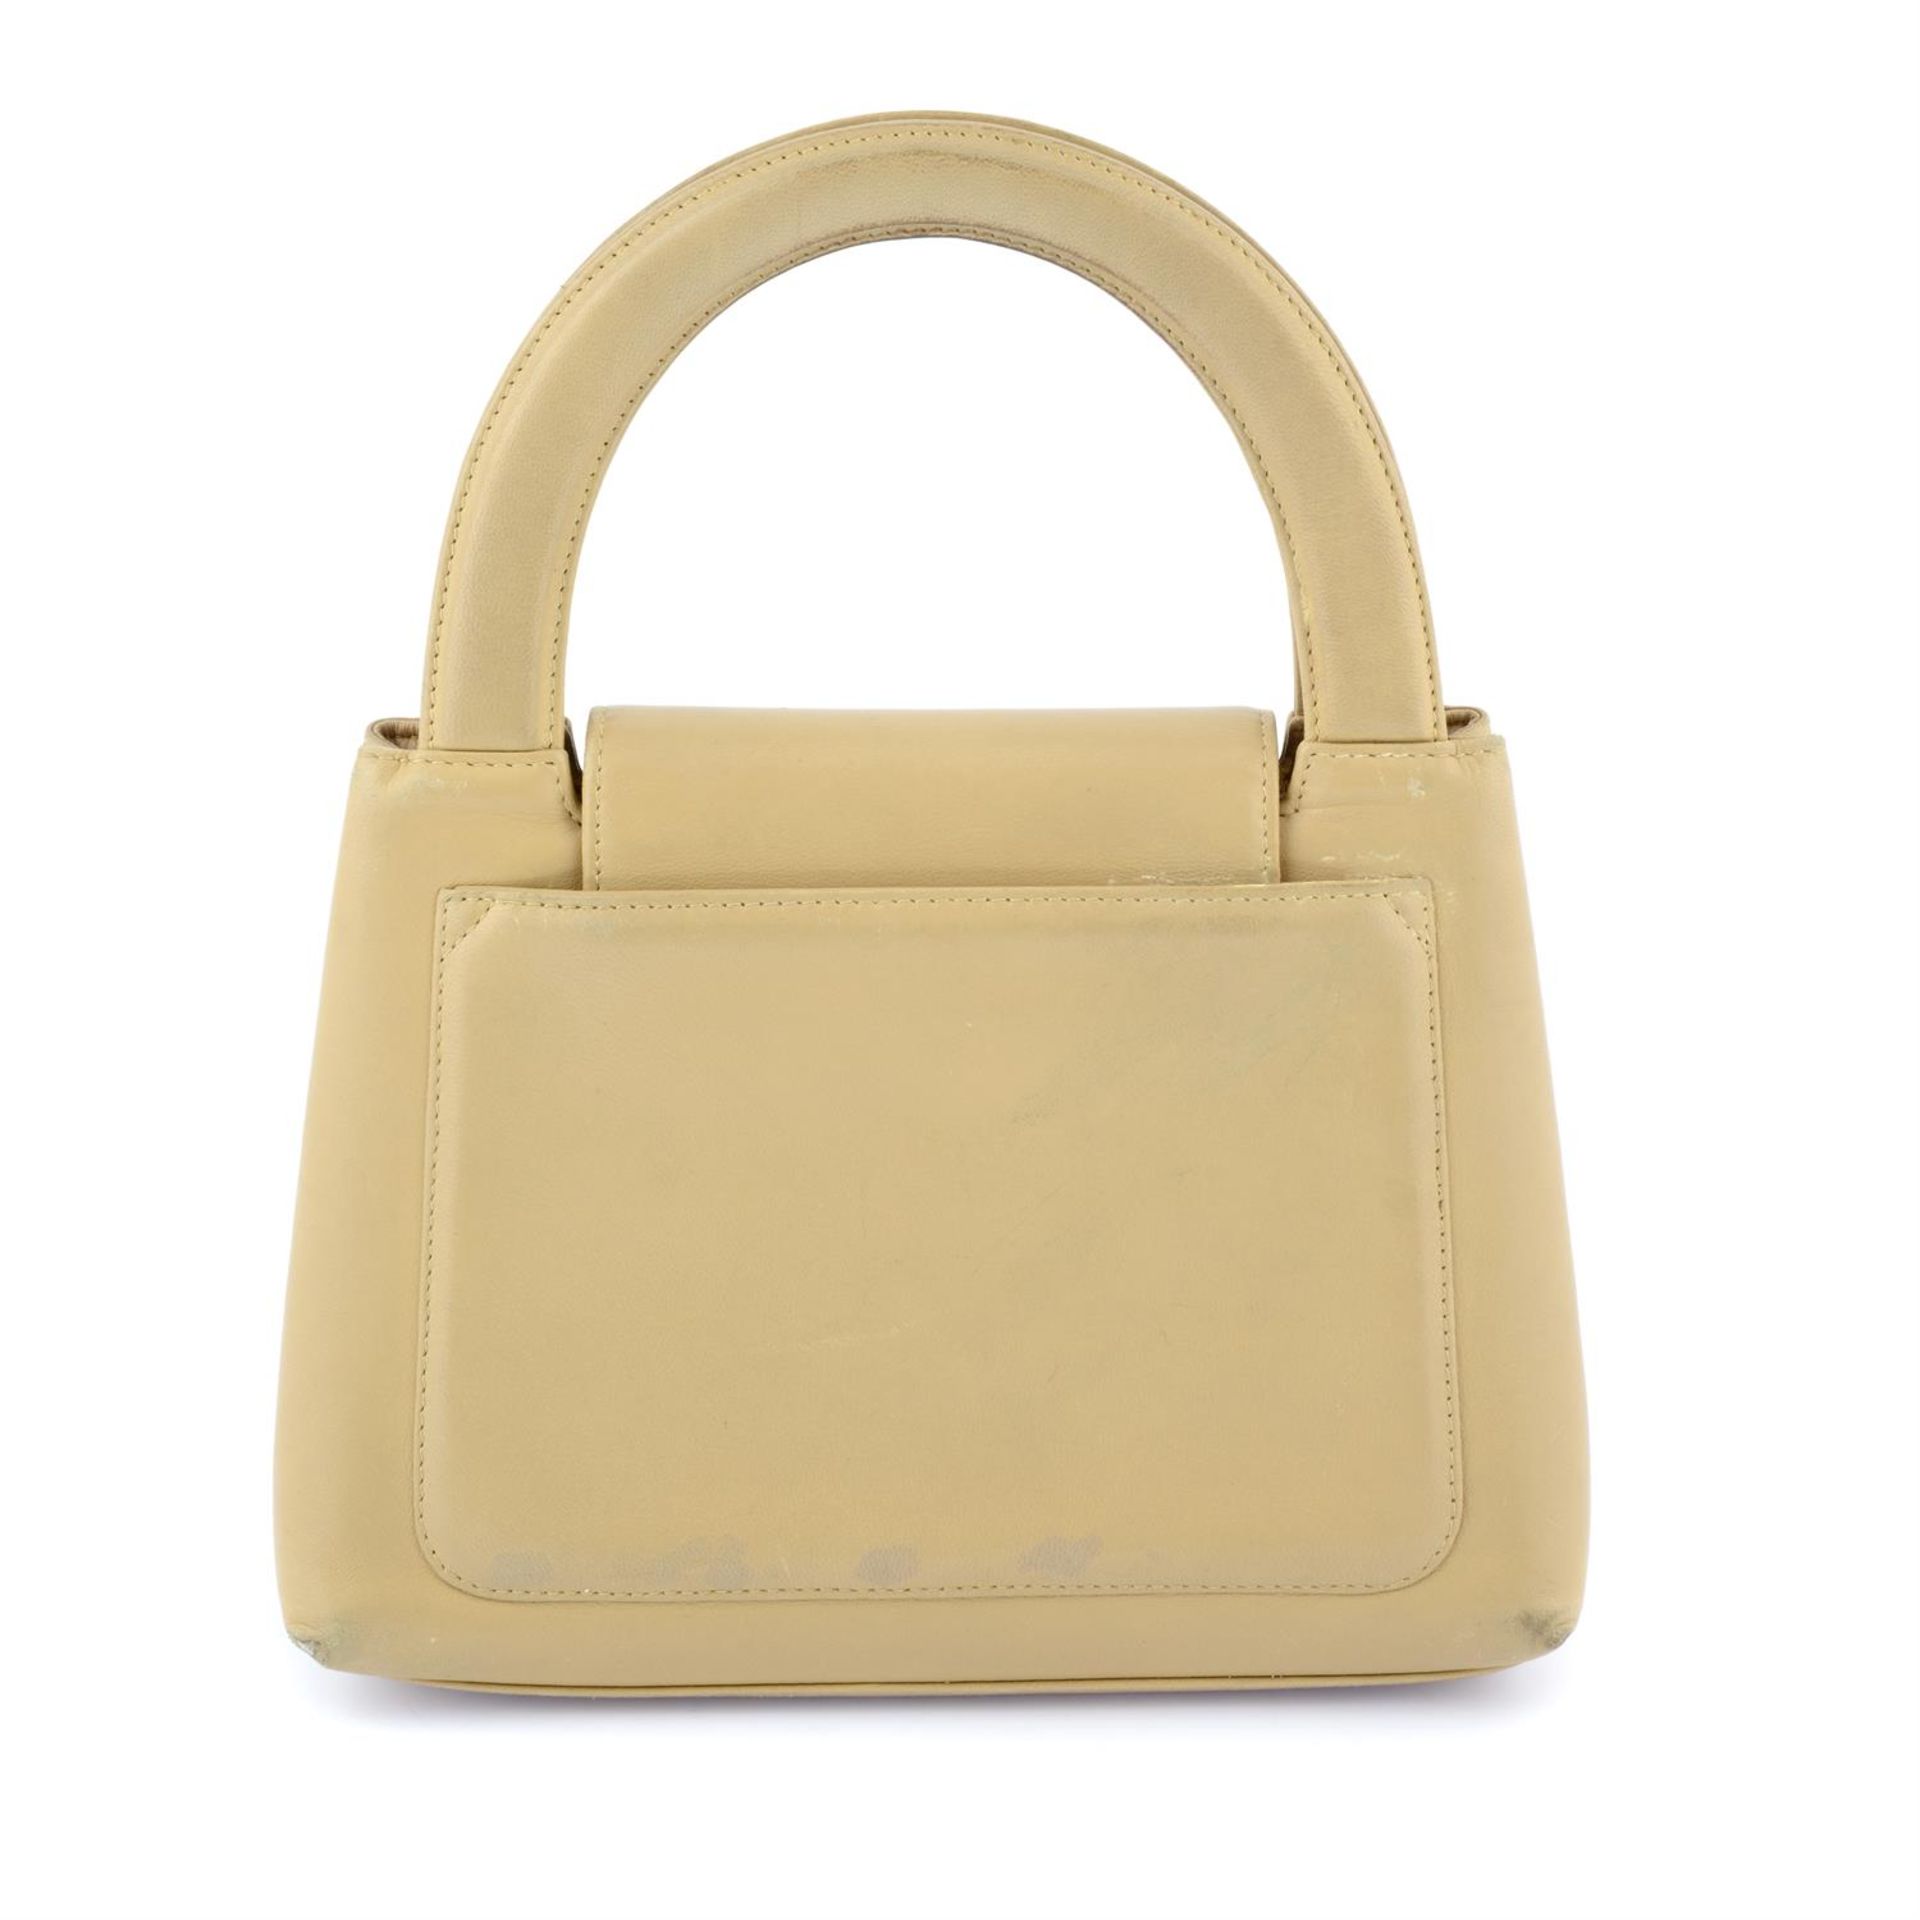 CHANEL - a beige Lambskin Kelly handbag. - Image 2 of 4